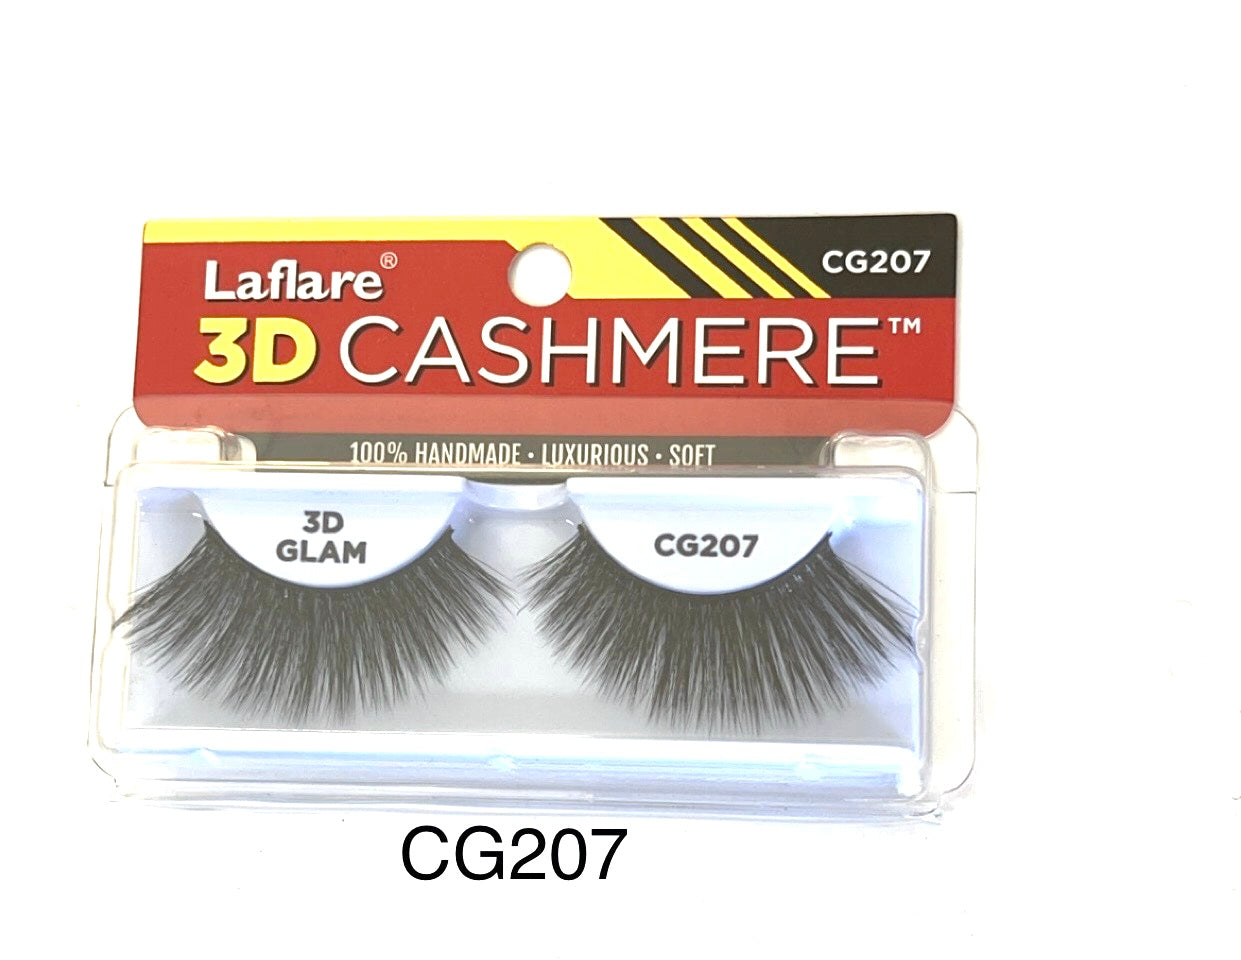 Laflare 3D Cashmere CG207